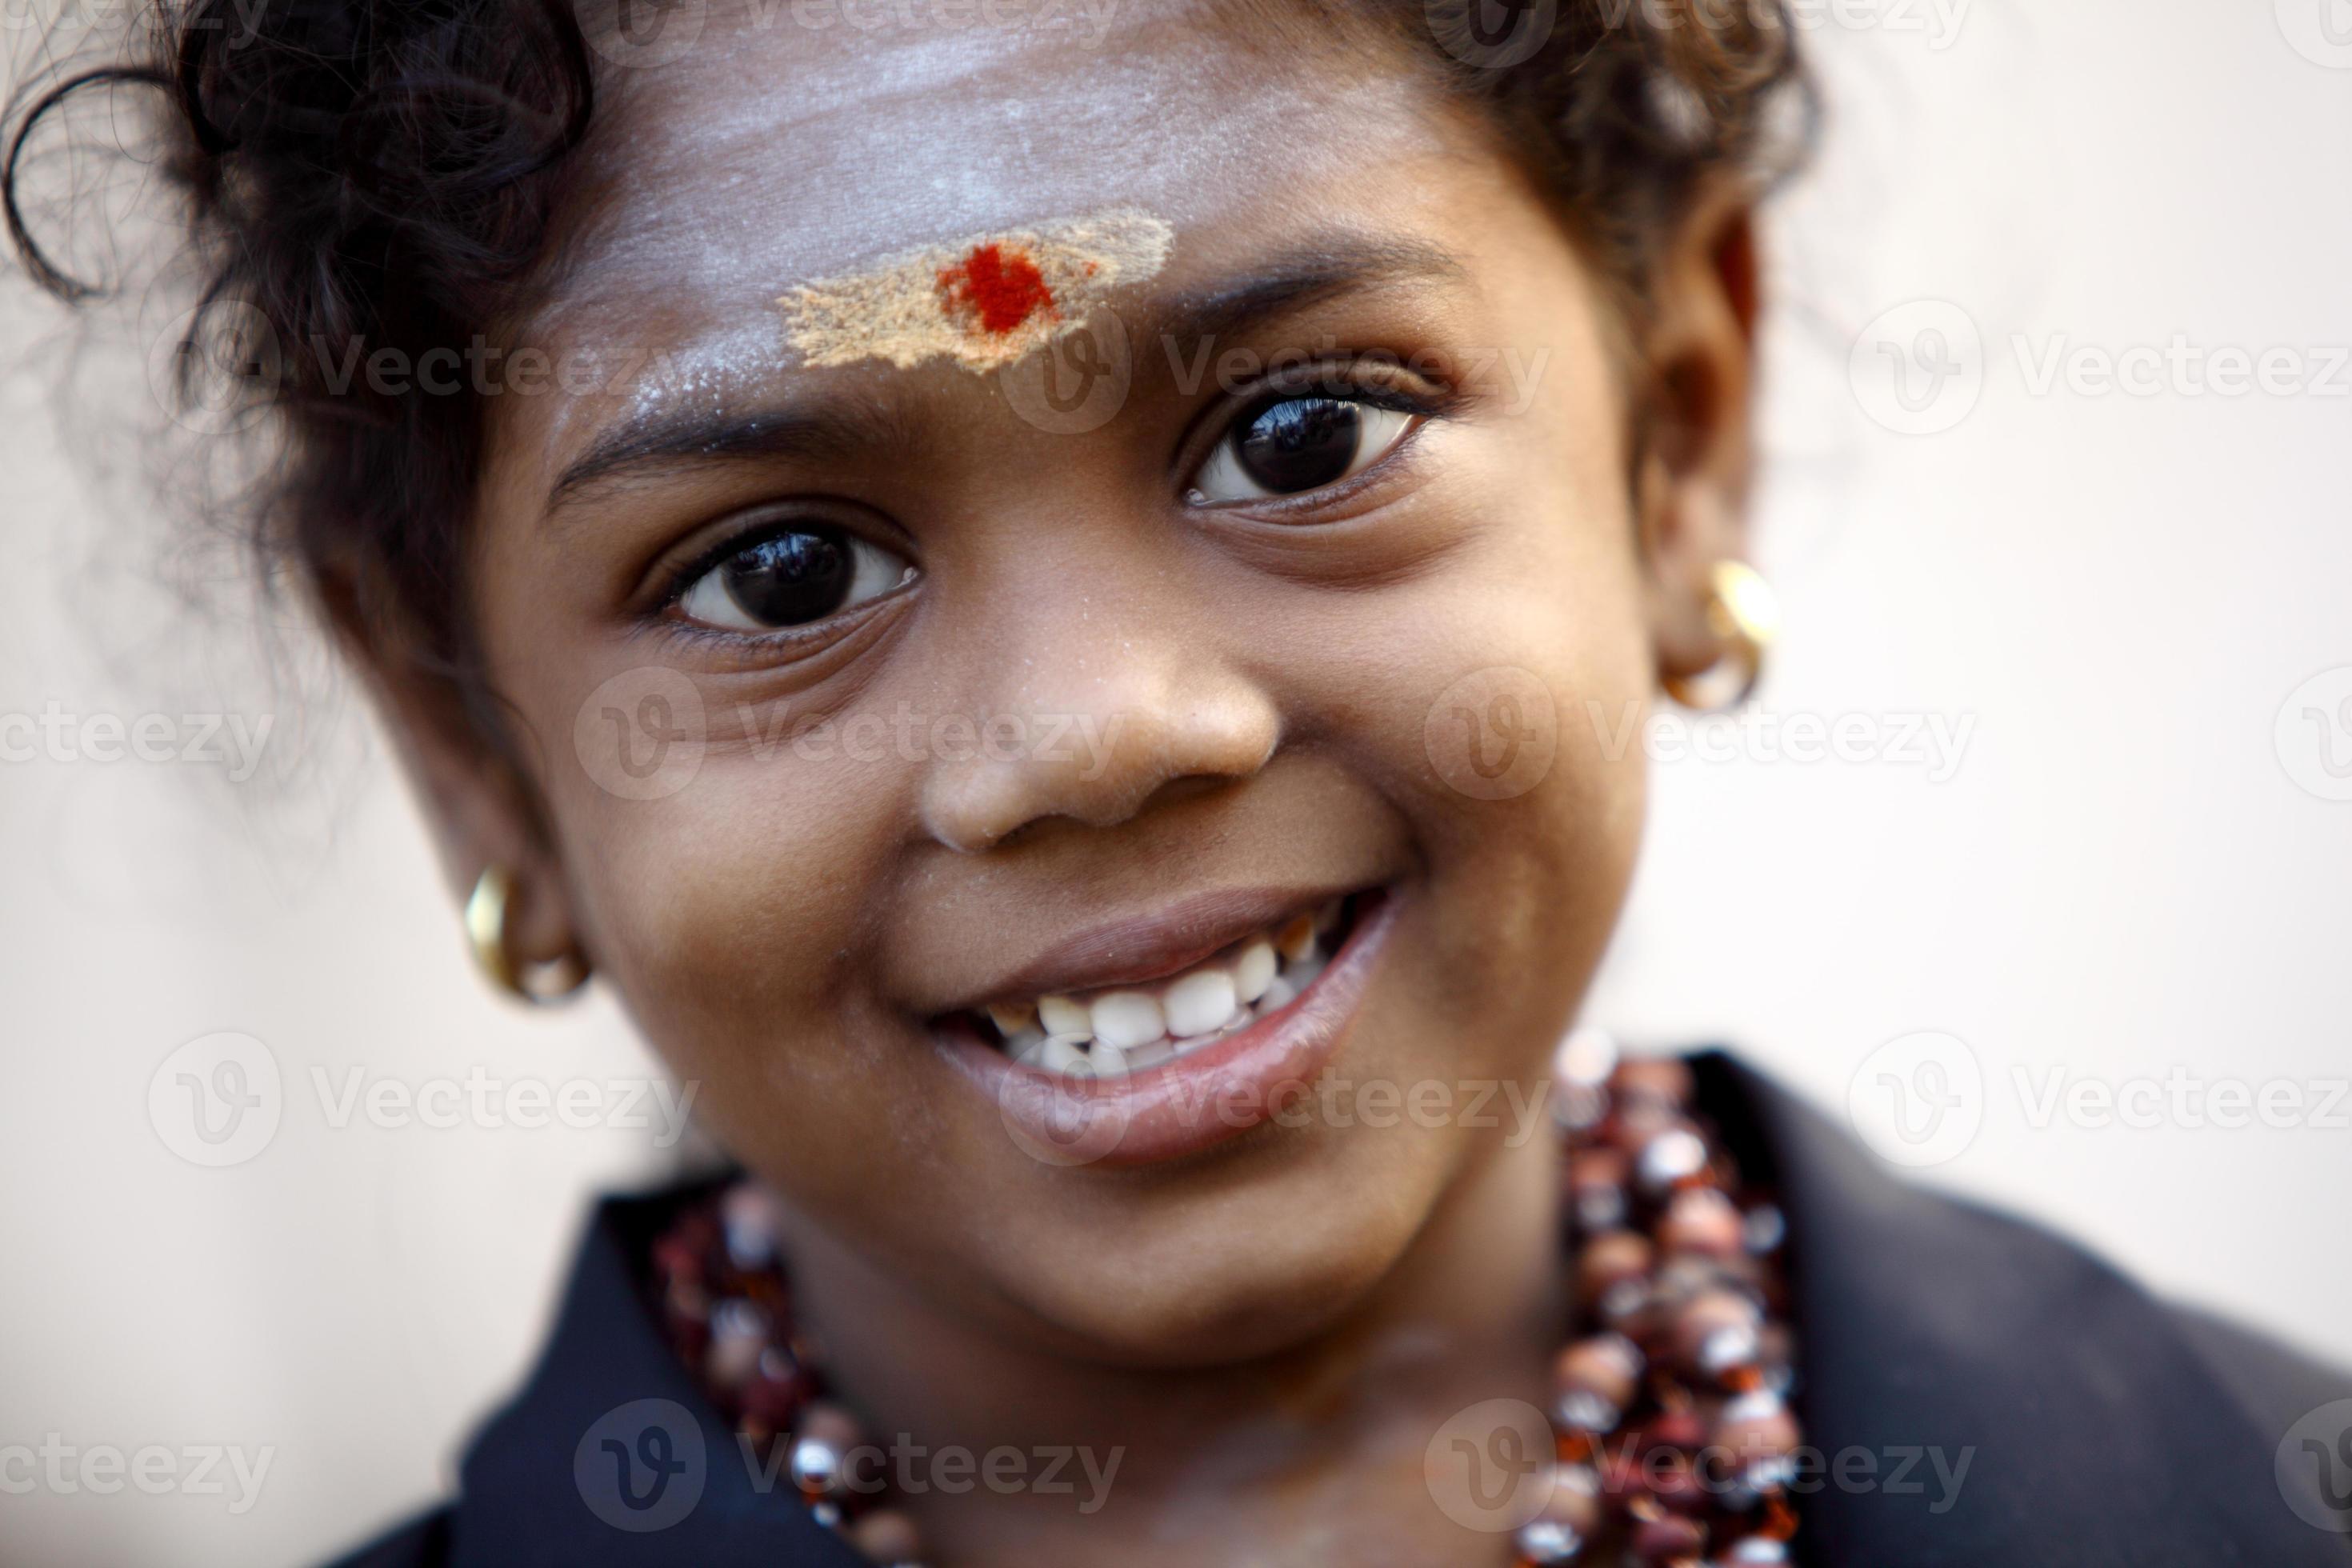 retrato de menina indiana hindu sorridente fofo foto